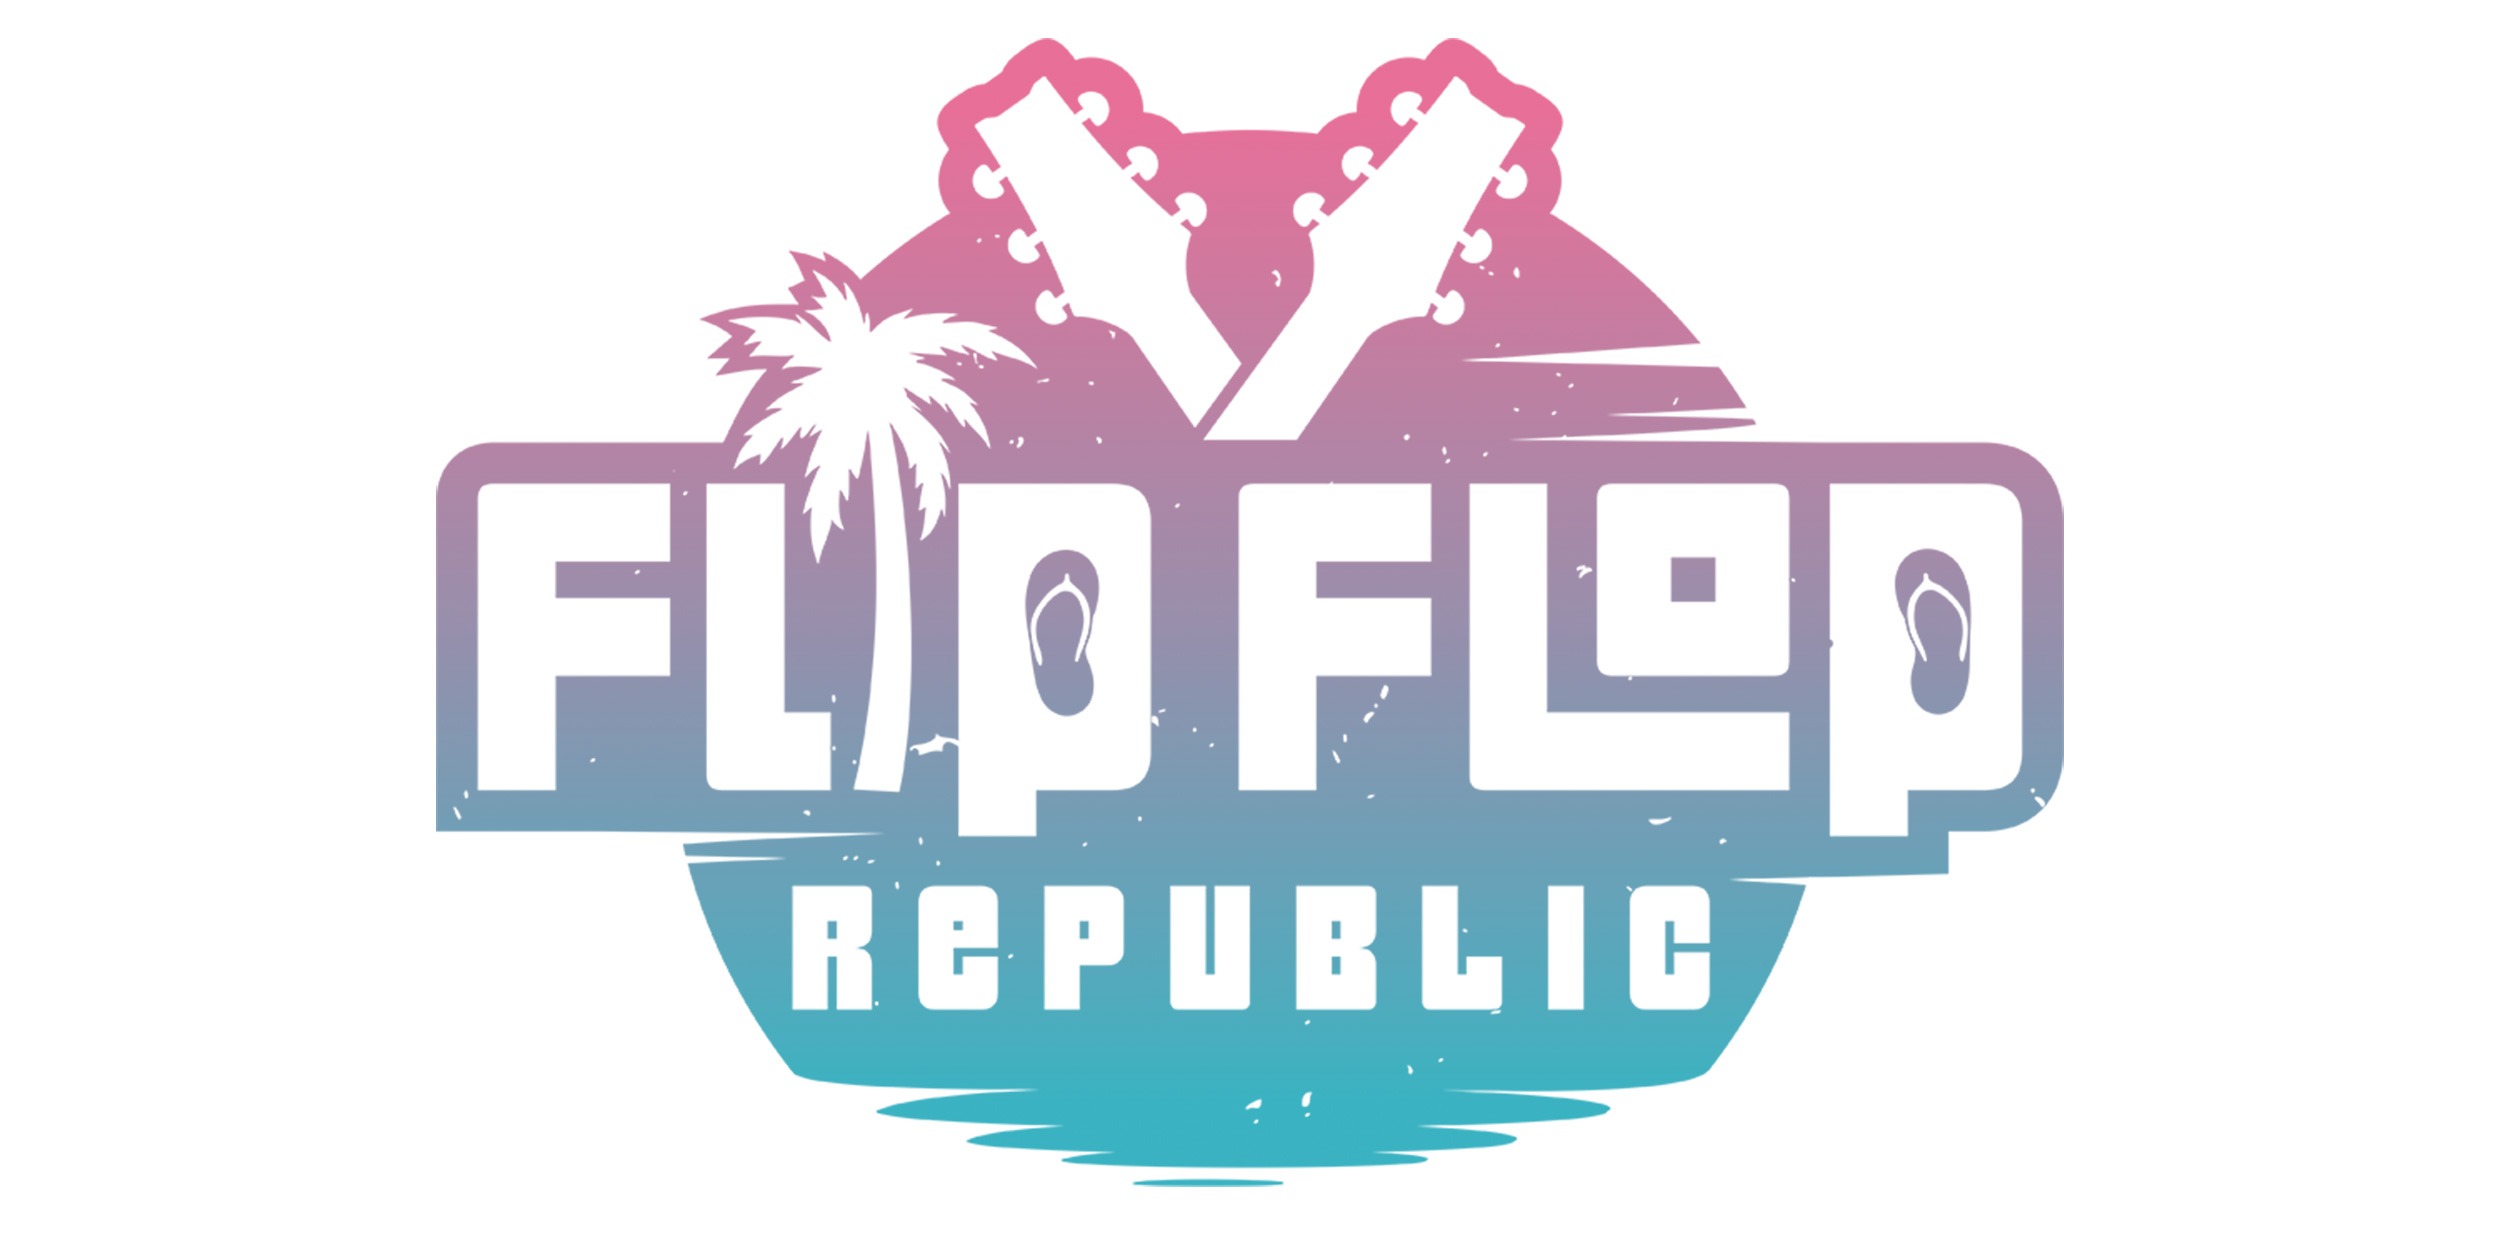 Flip Flop Republic, The Troprock Shop